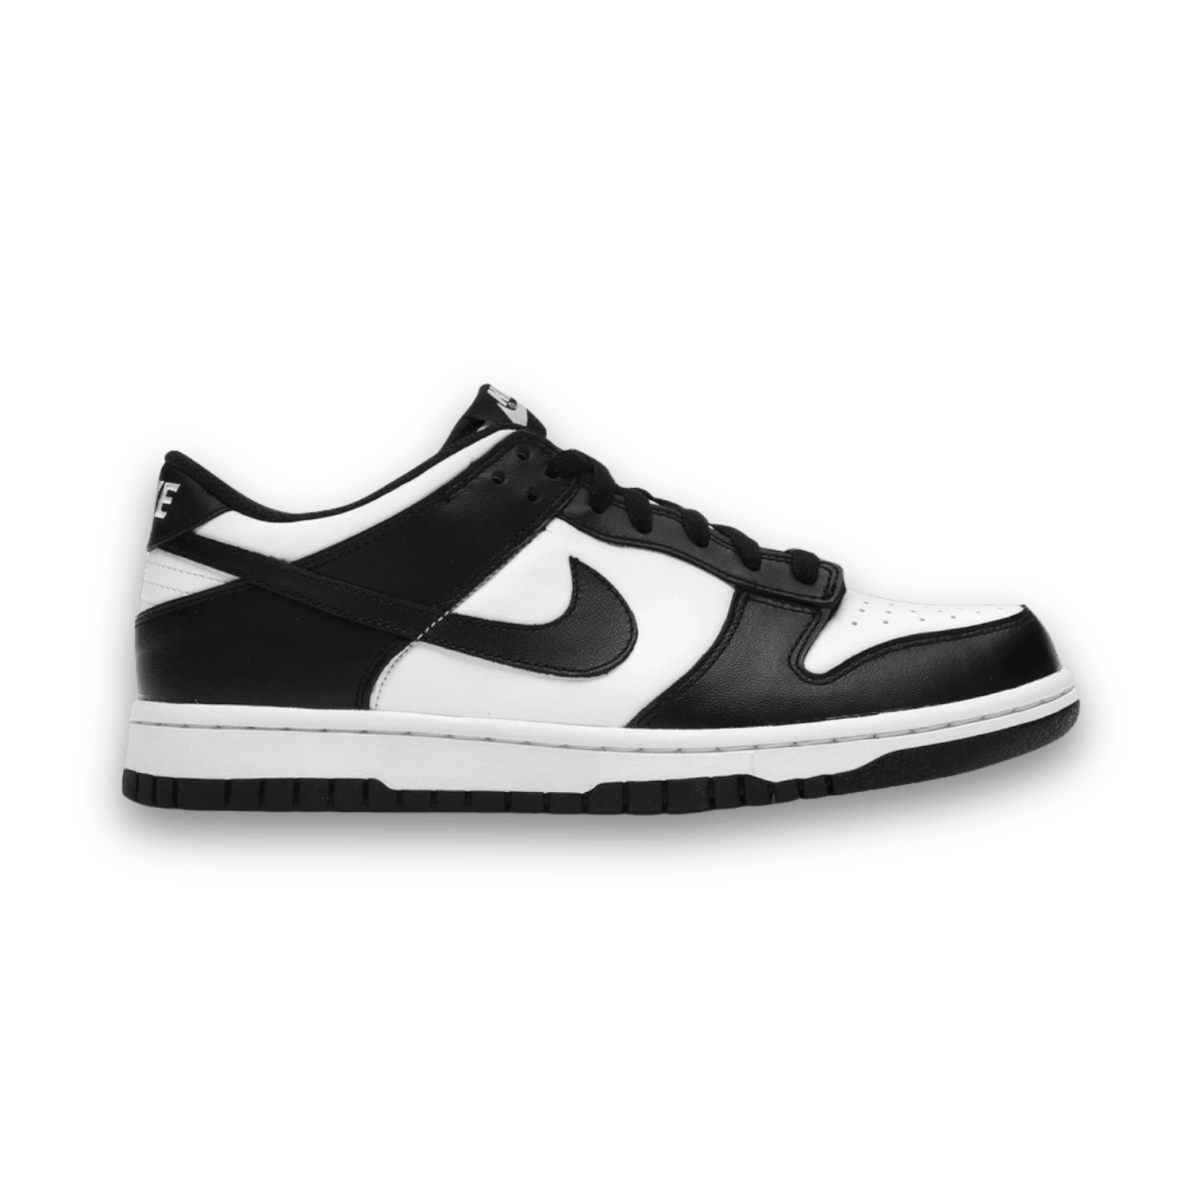 Dunk Low Panda - Grade School - Low Sneaker - Dunks - Jawns on Fire - sneakers